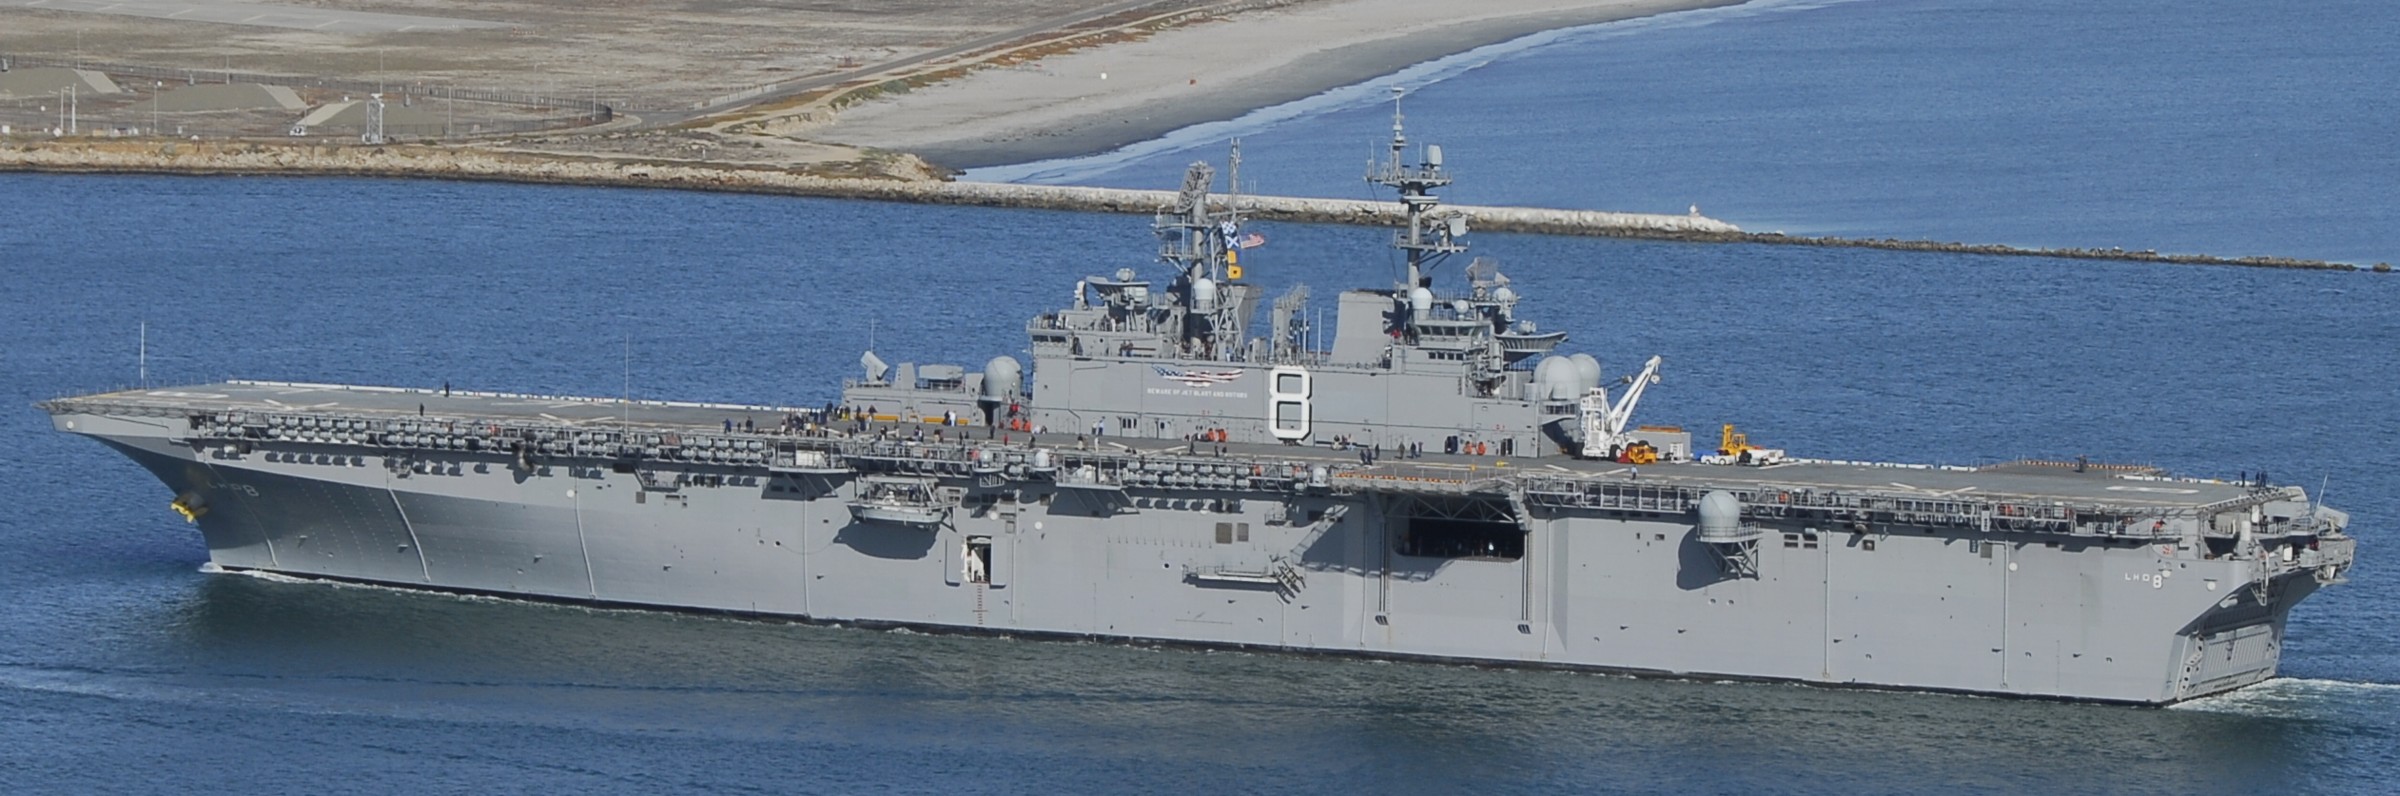 lhd-8 uss makin island amphibious assault ship landing helicopter dock us navy 26